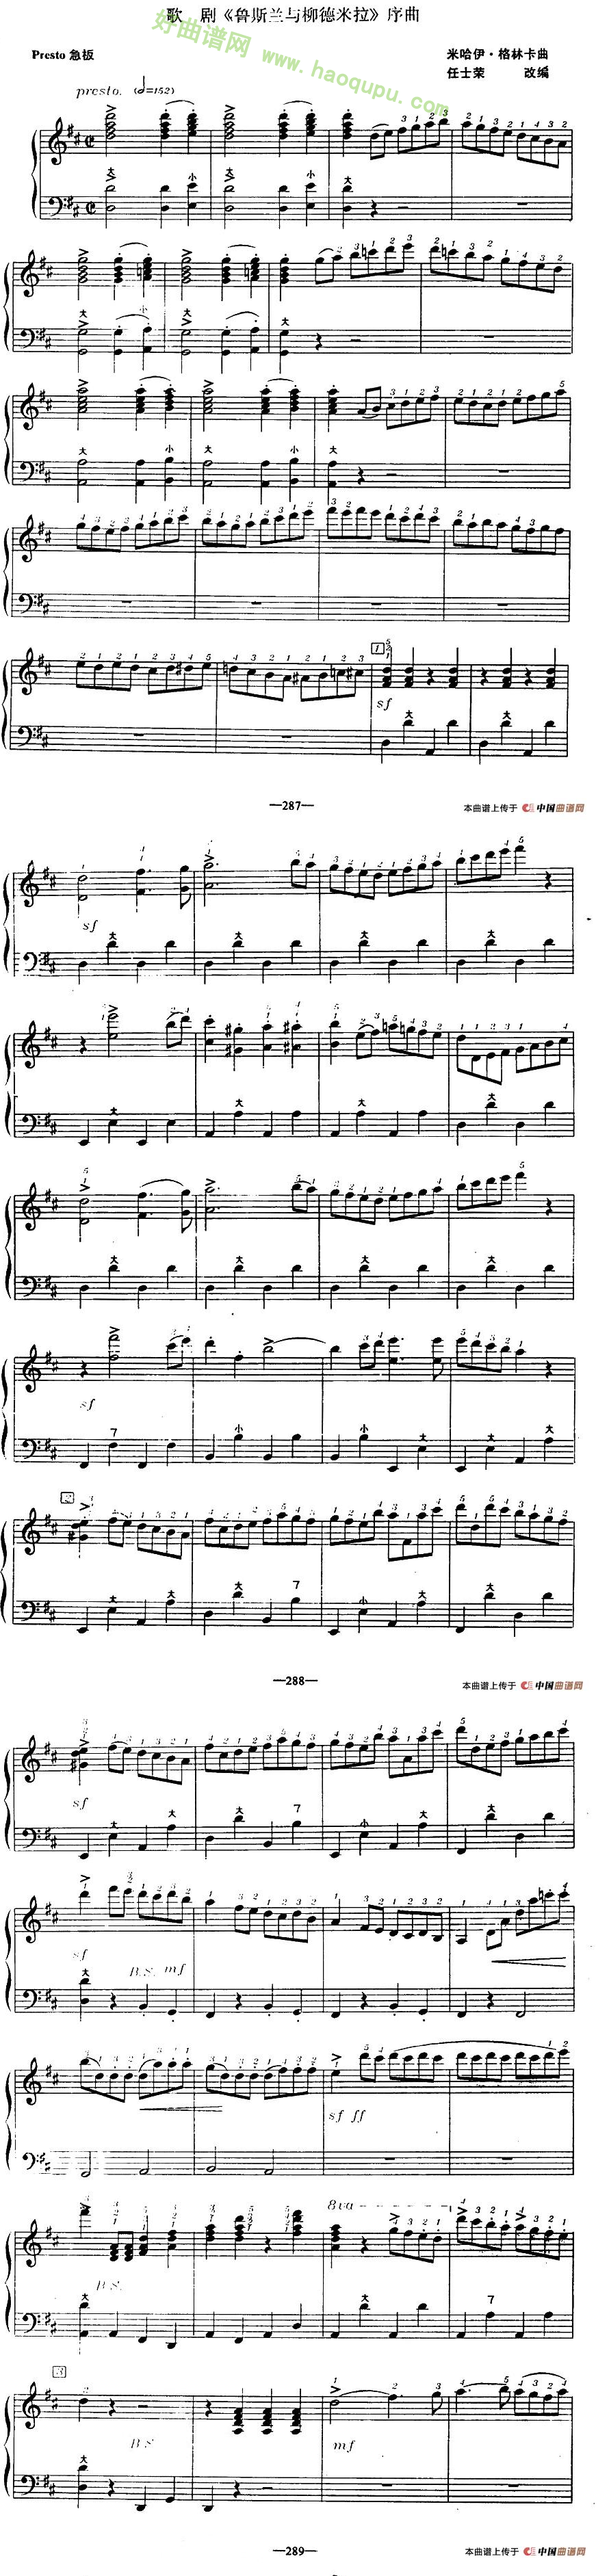 《鲁斯兰与柳德米拉》序曲手风琴曲谱第1张